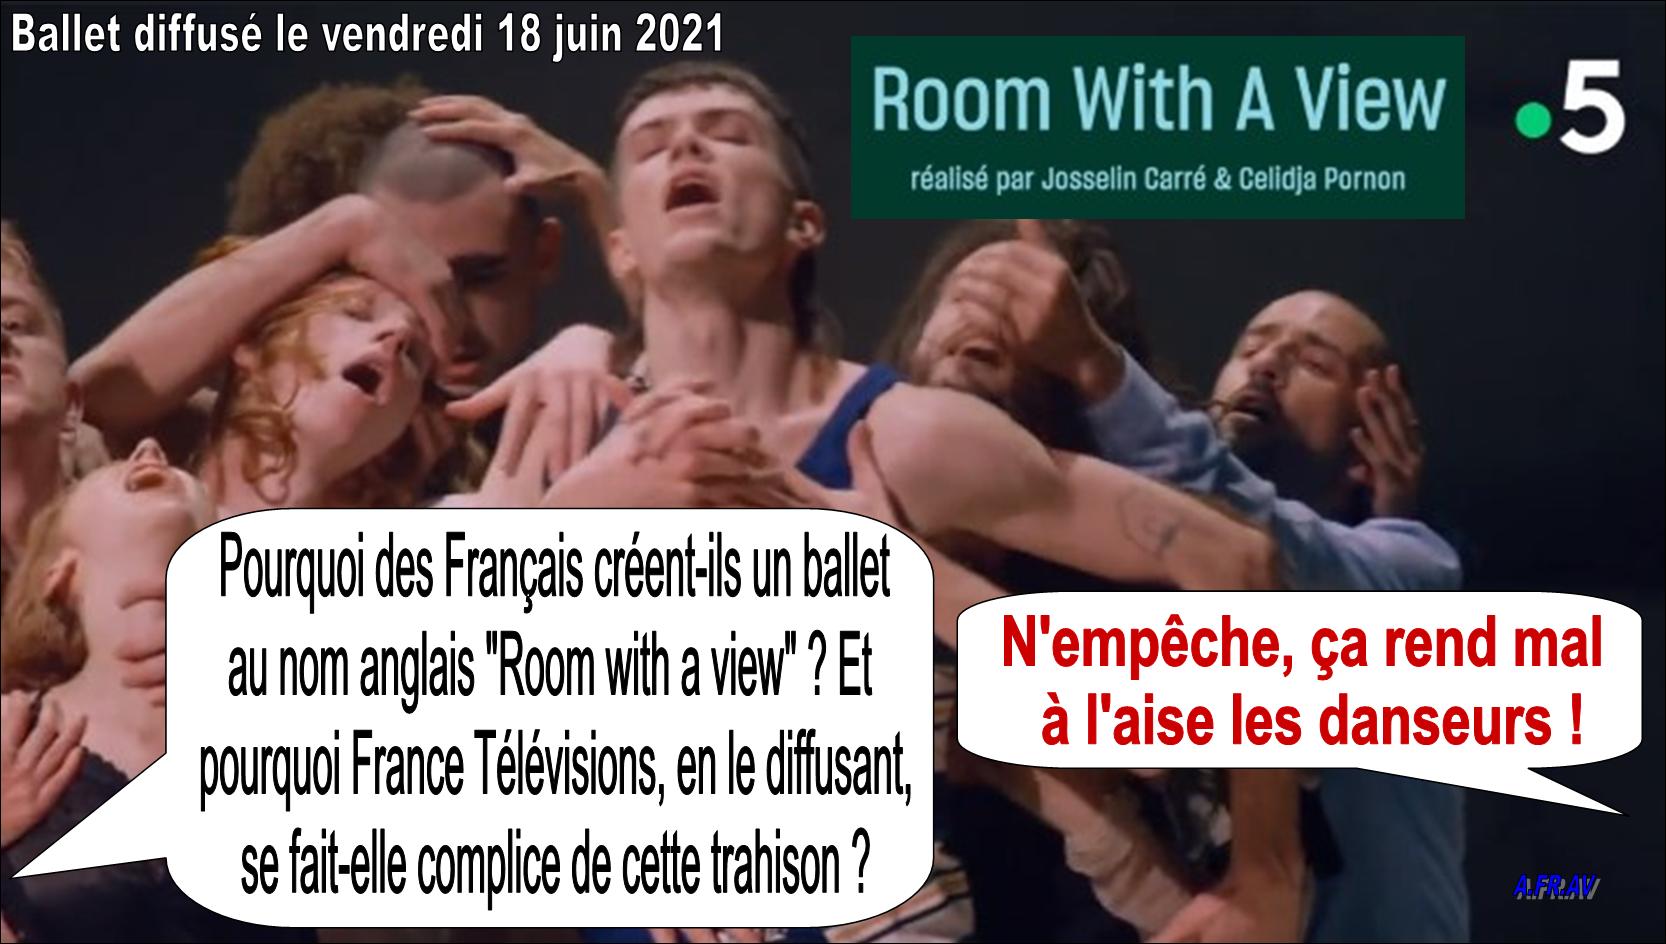 Room With a View, Chambre Avec Vue, Rone La Horde, Josselin Carré, Célidja Prnon